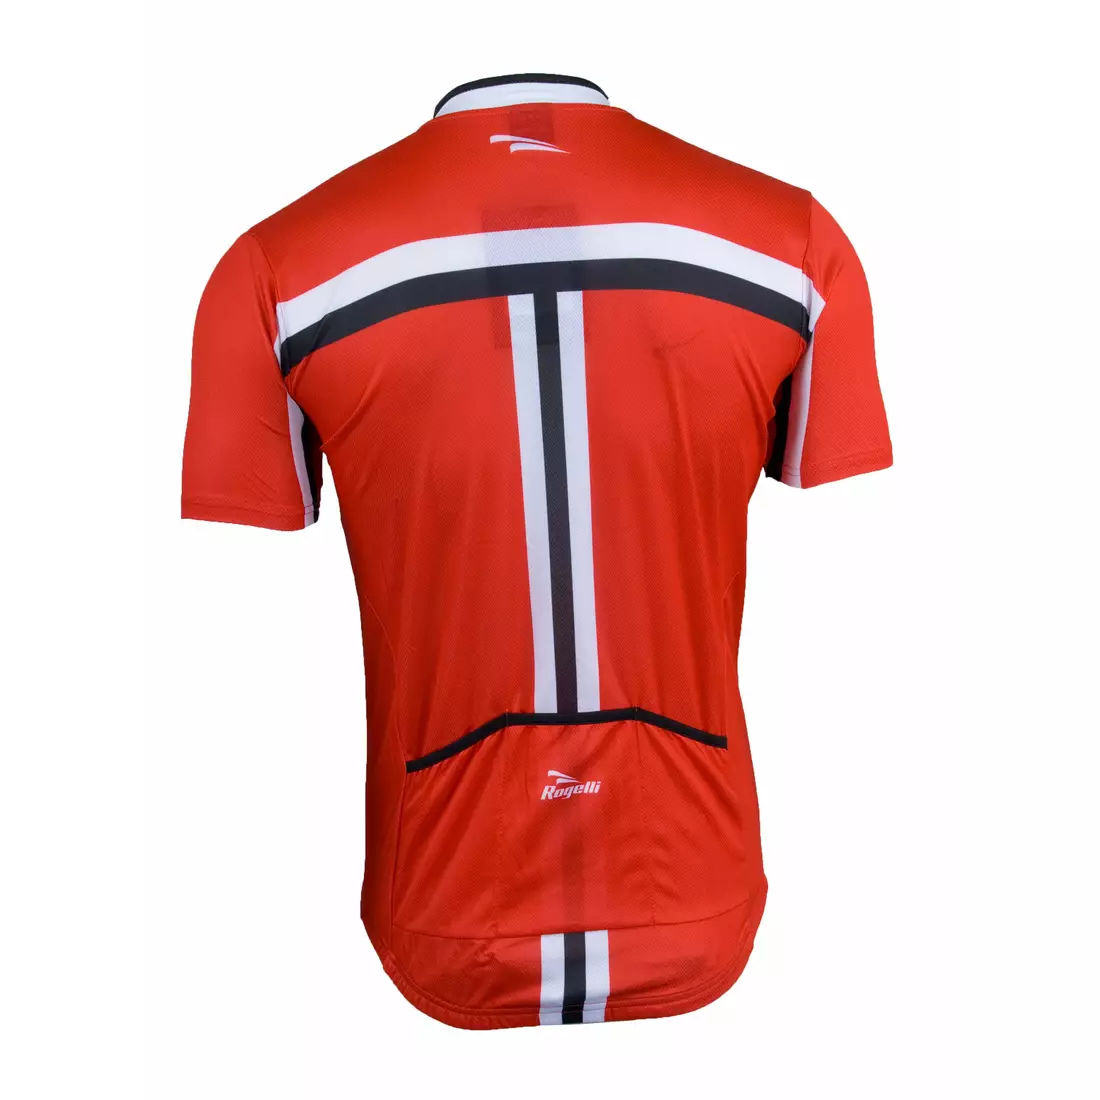 ROGELLI BRESCIA pánsky cyklistický dres 001.064, červený